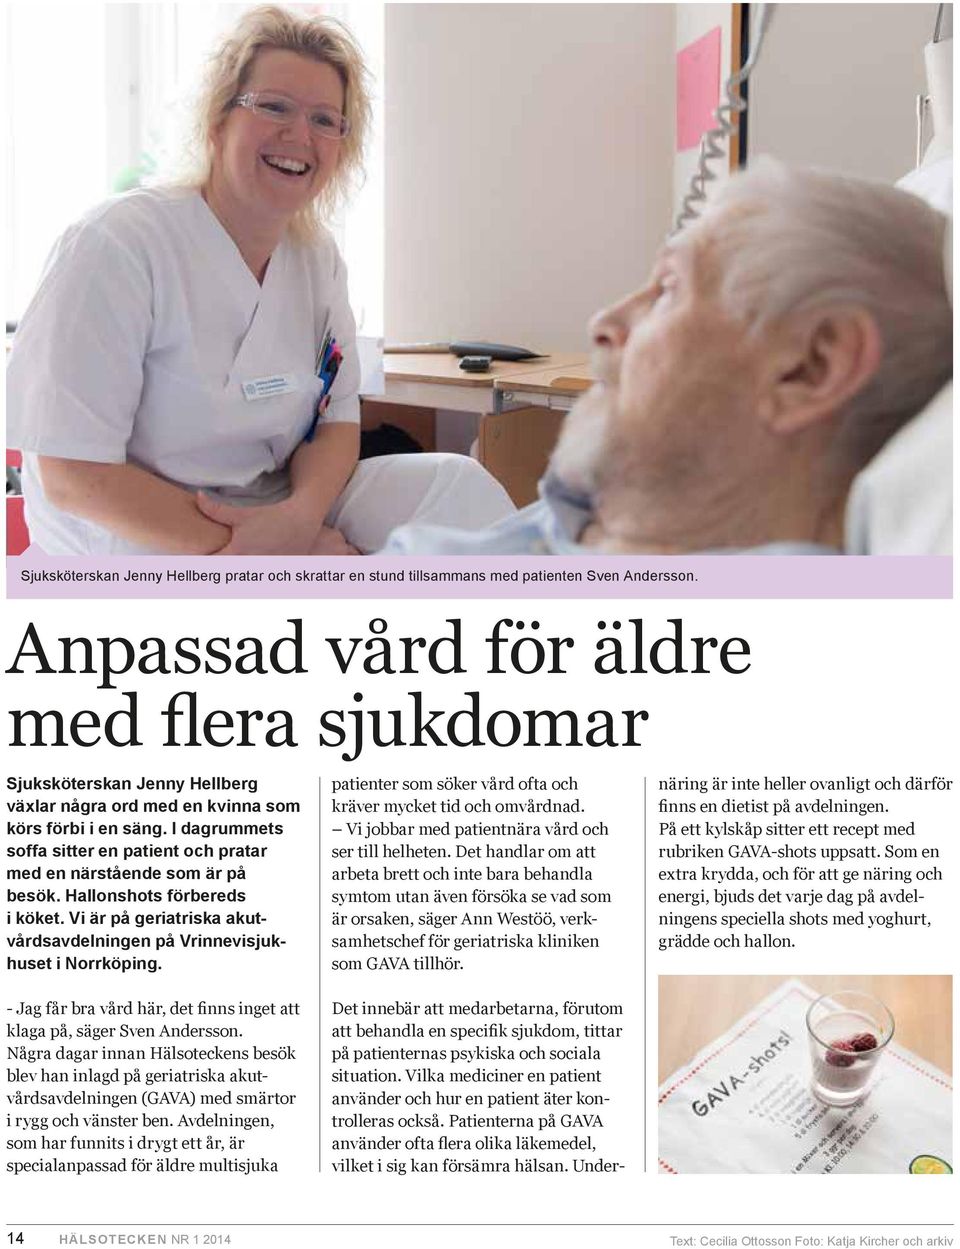 I dagrummets soffa sitter en patient och pratar med en närstående som är på besök. Hallonshots förbereds i köket. Vi är på geriatriska akutvårdsavdelningen på Vrinnevisjukhuset i Norrköping.